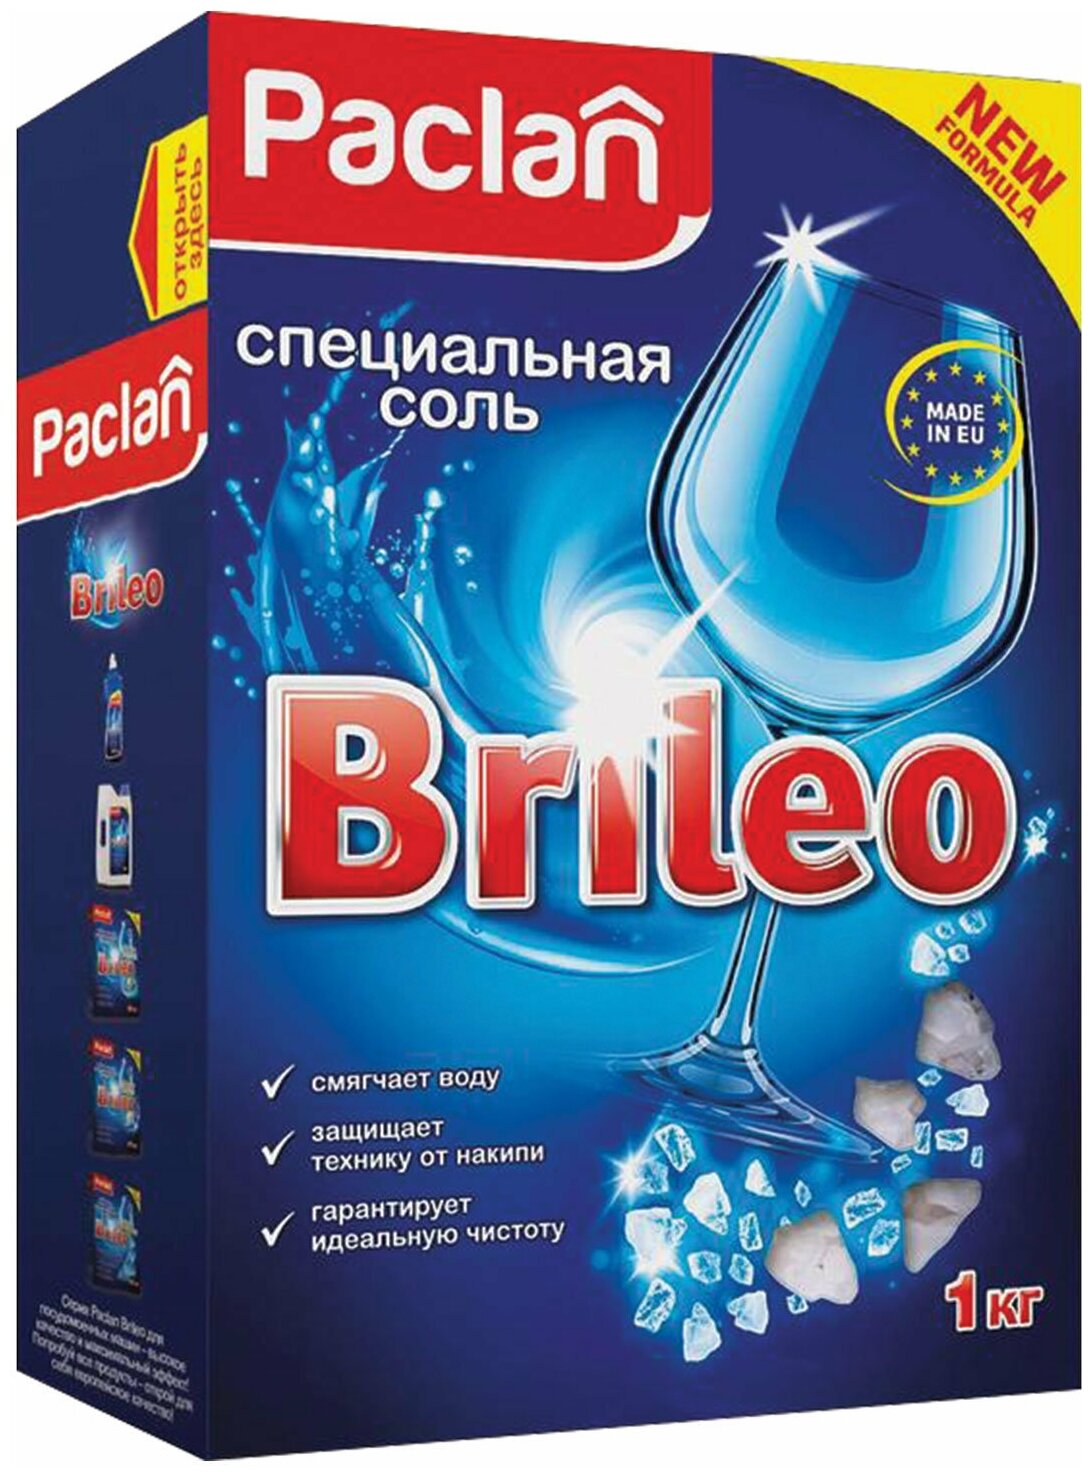 Соль от накипи в посудомоечных машинах 1 кг PACLAN Brileo, 419150 - 1 шт.